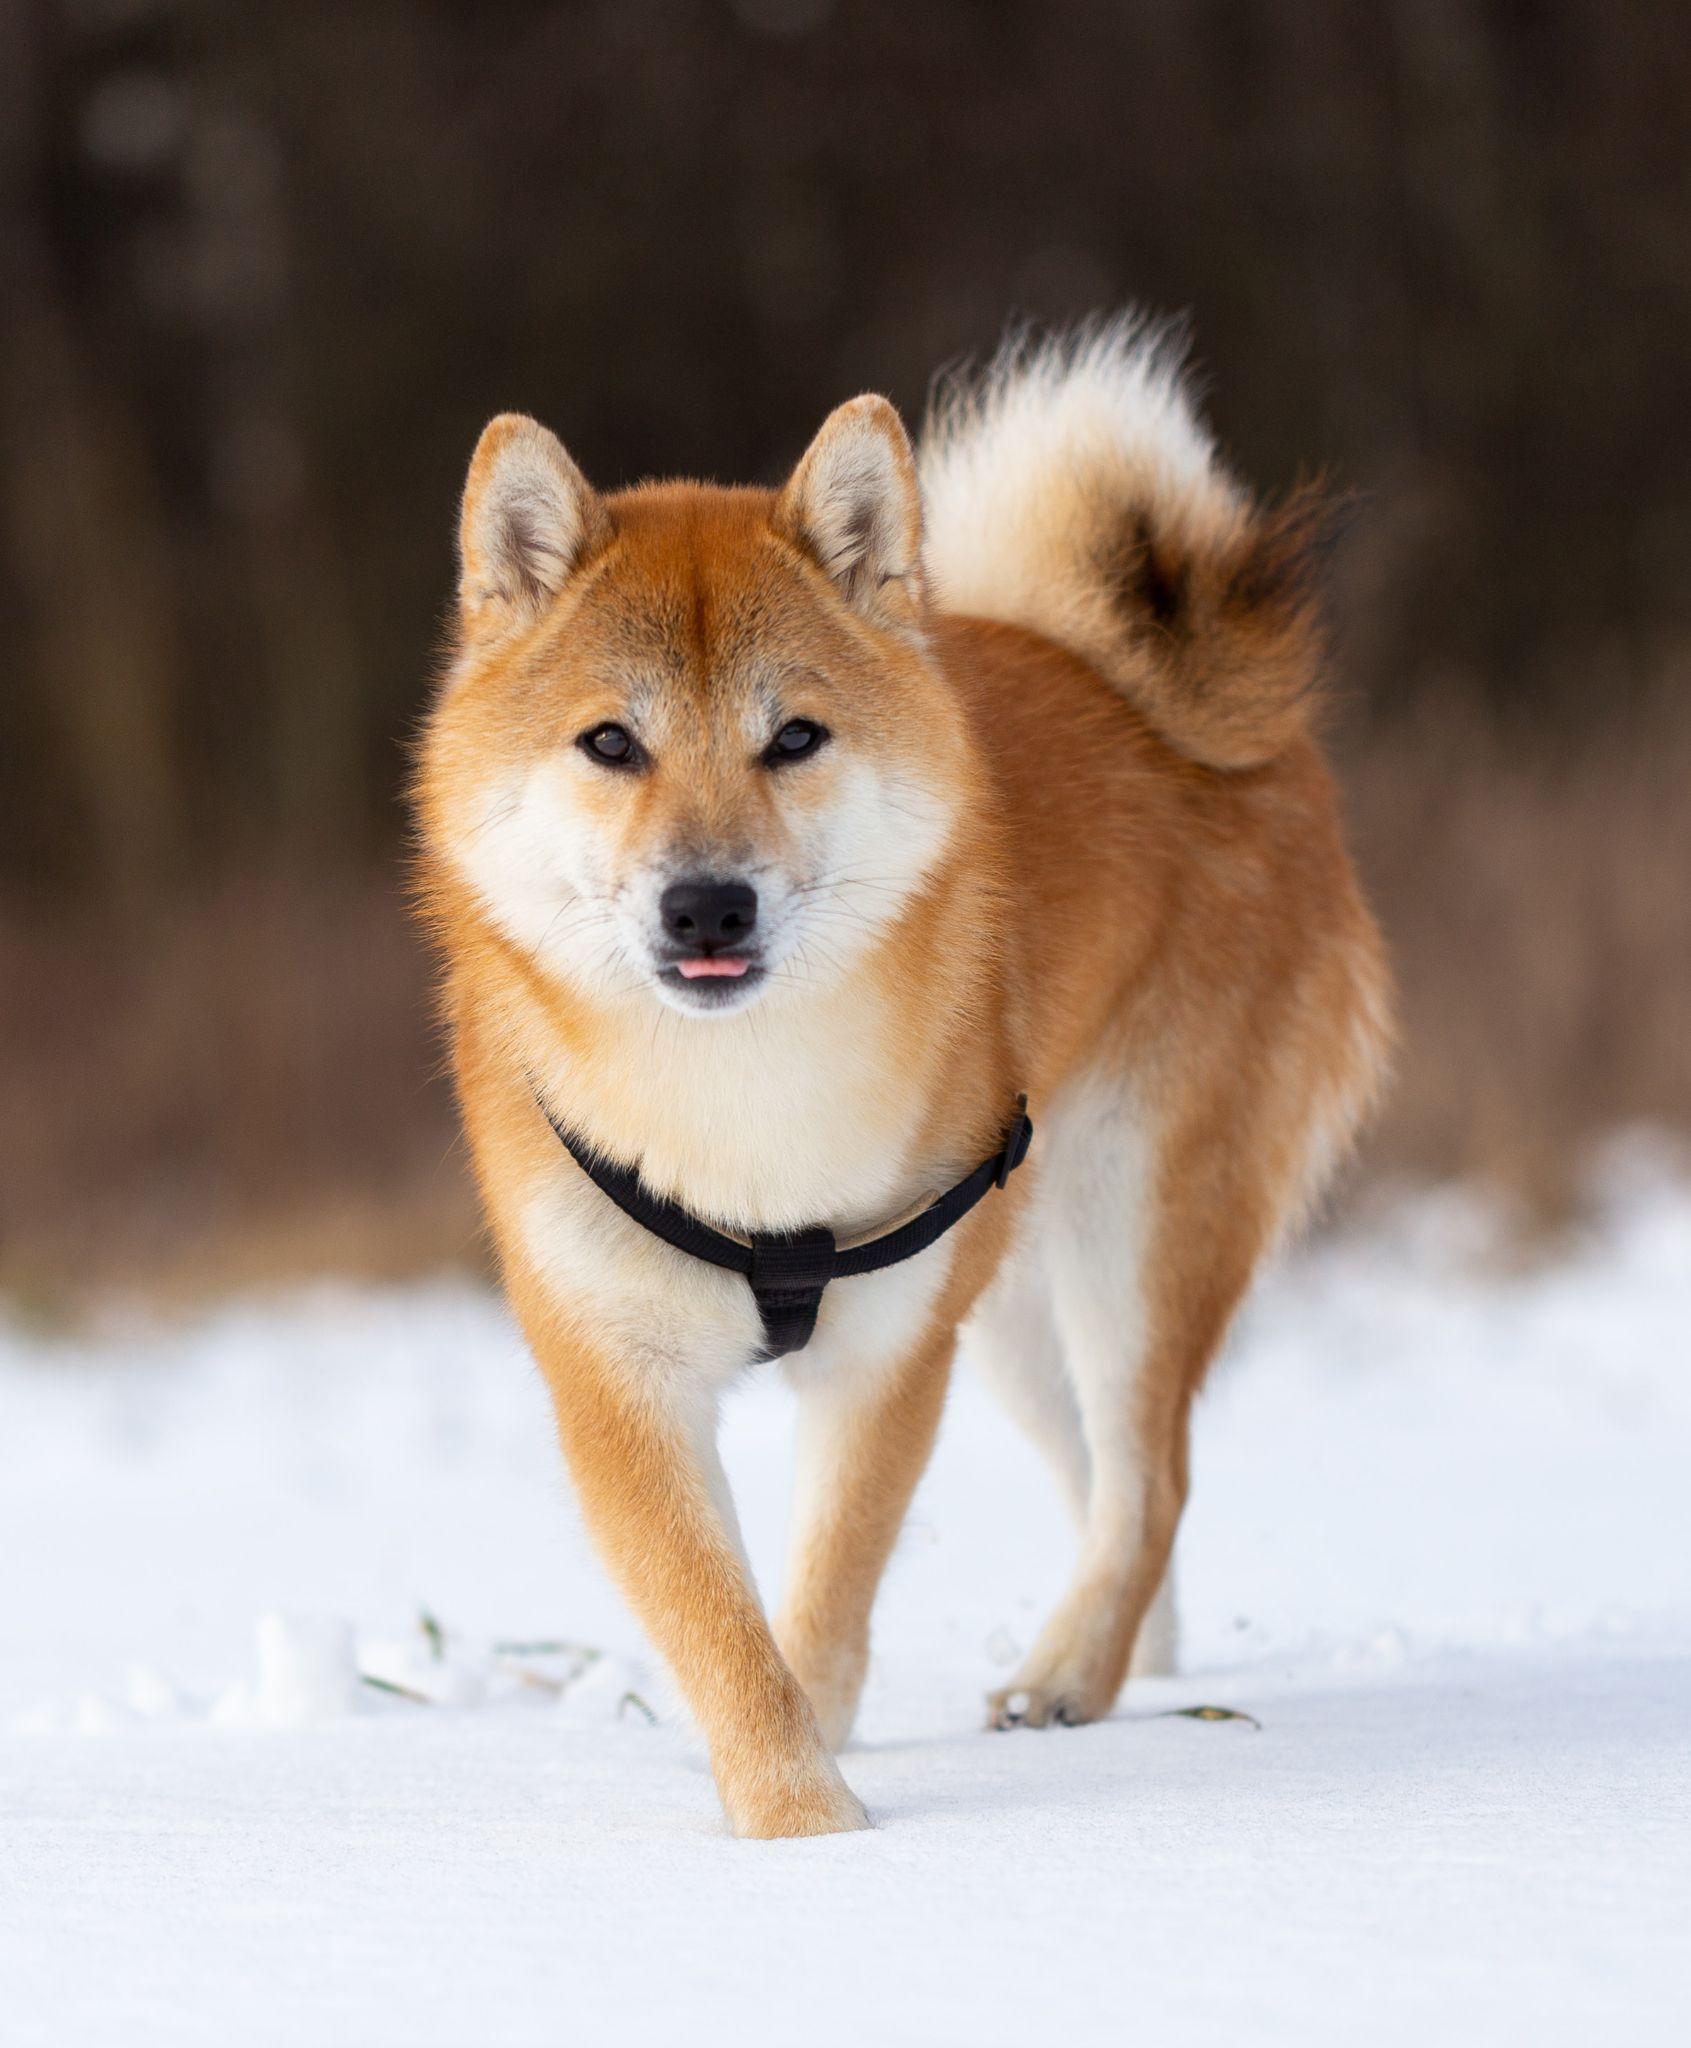 Shiba loài chó nổi tiếng vì khuôn mặt phúc hậu và hay cười - 3